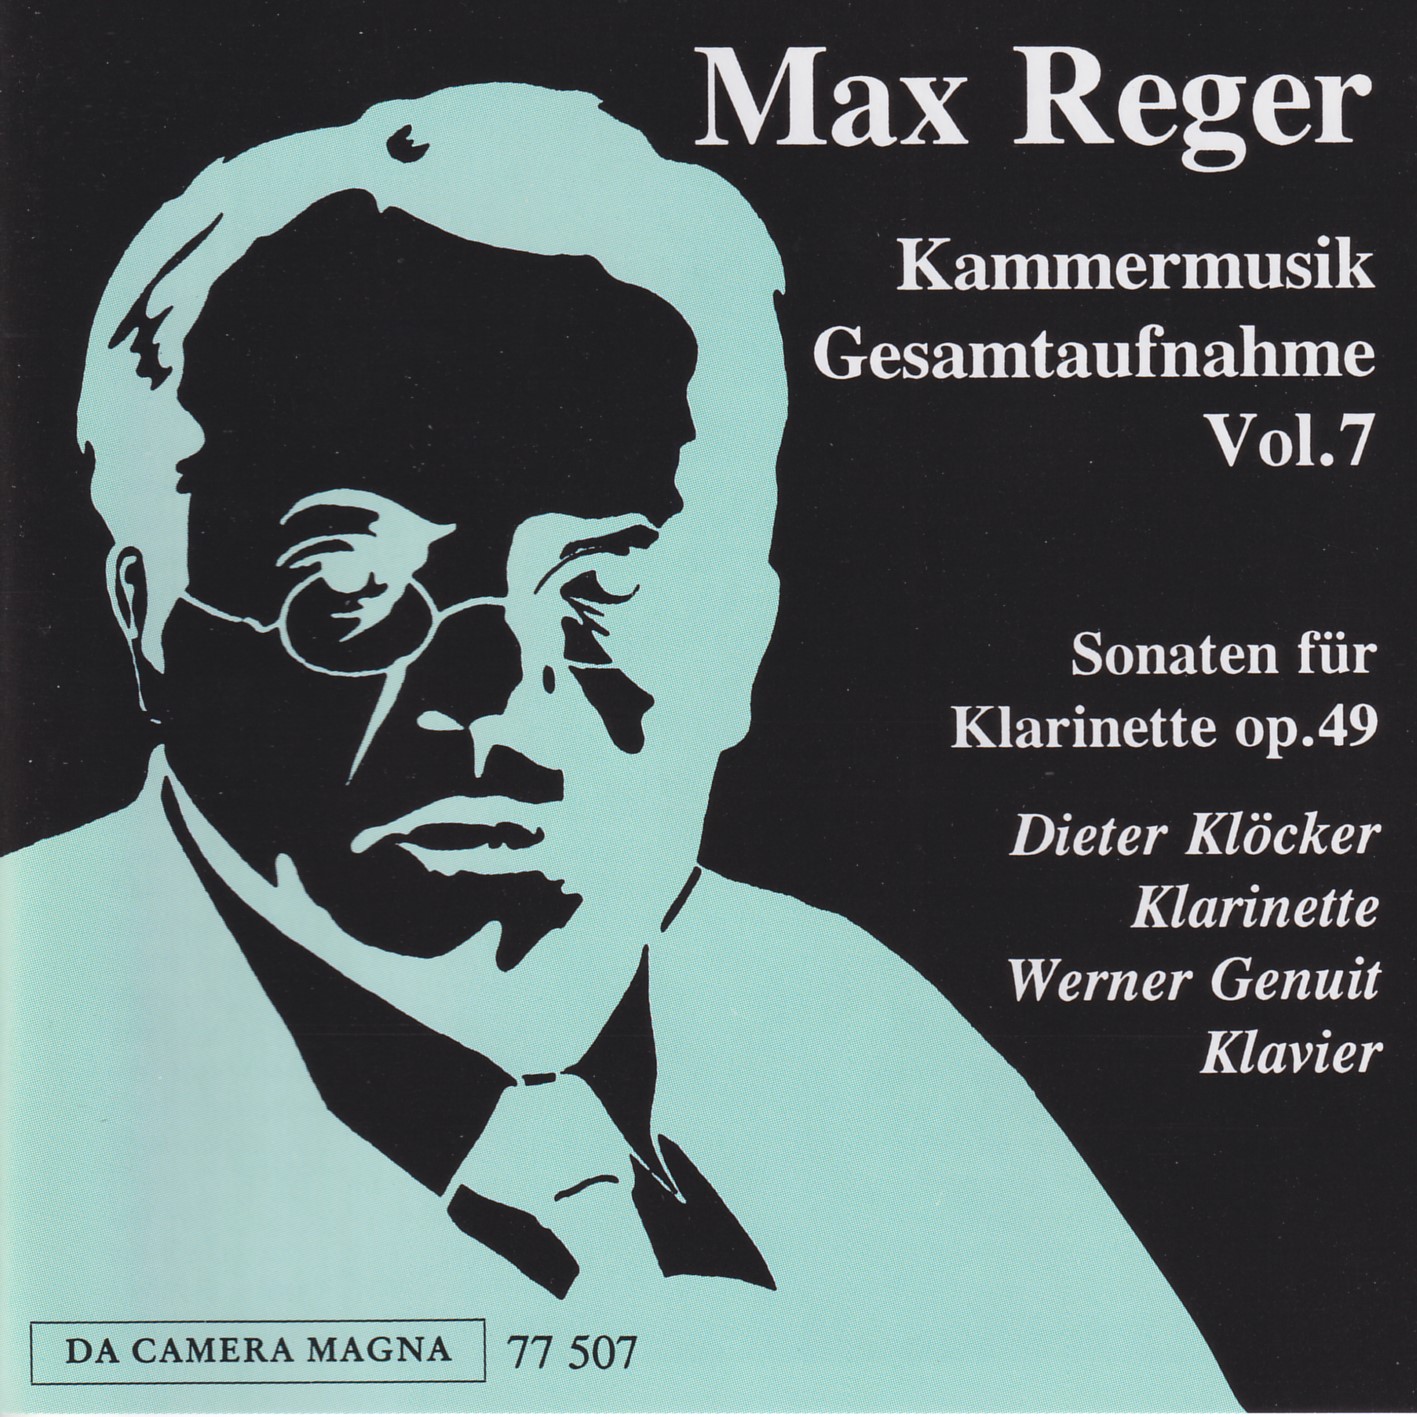 Max Reger - Kammermusik komplett Vol. 7